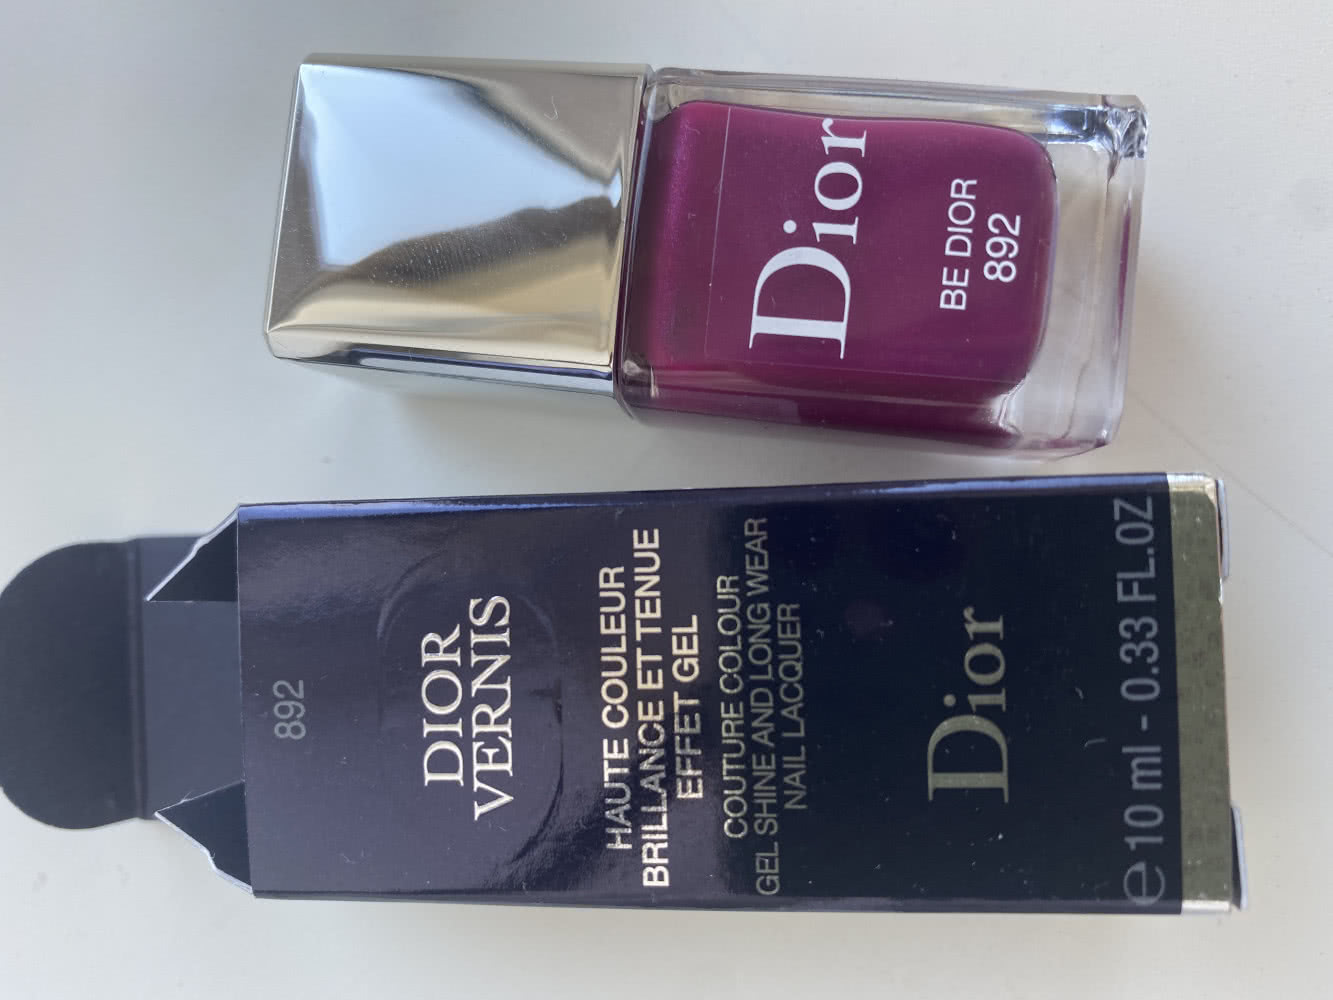 Лак Dior